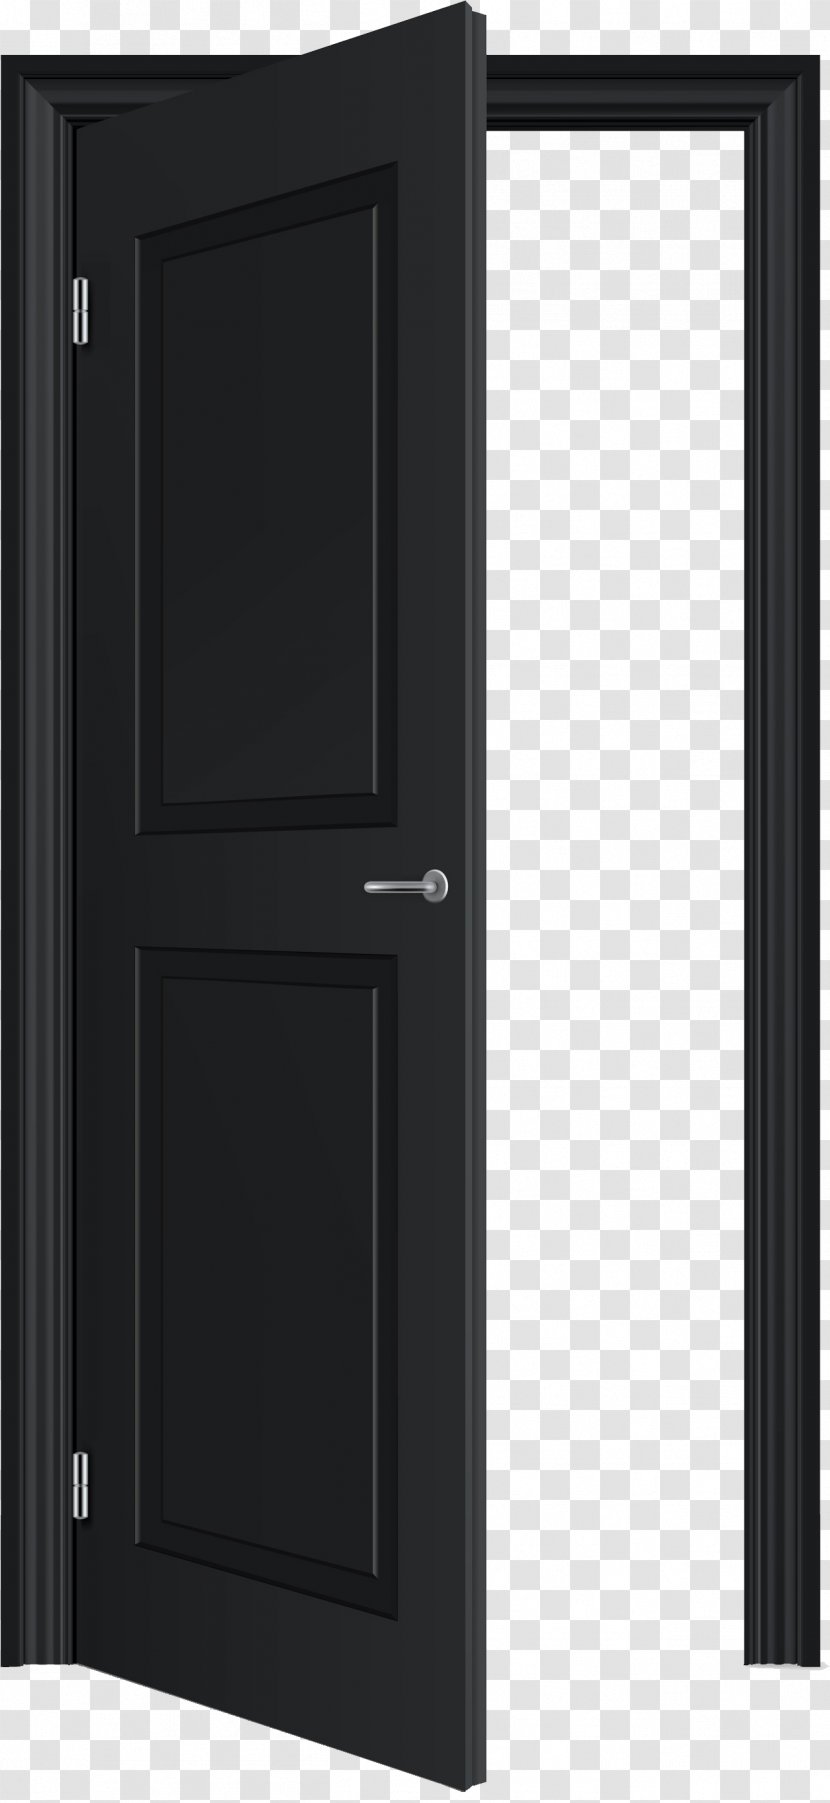 Door Clip Art - Digital Image - Open Transparent PNG